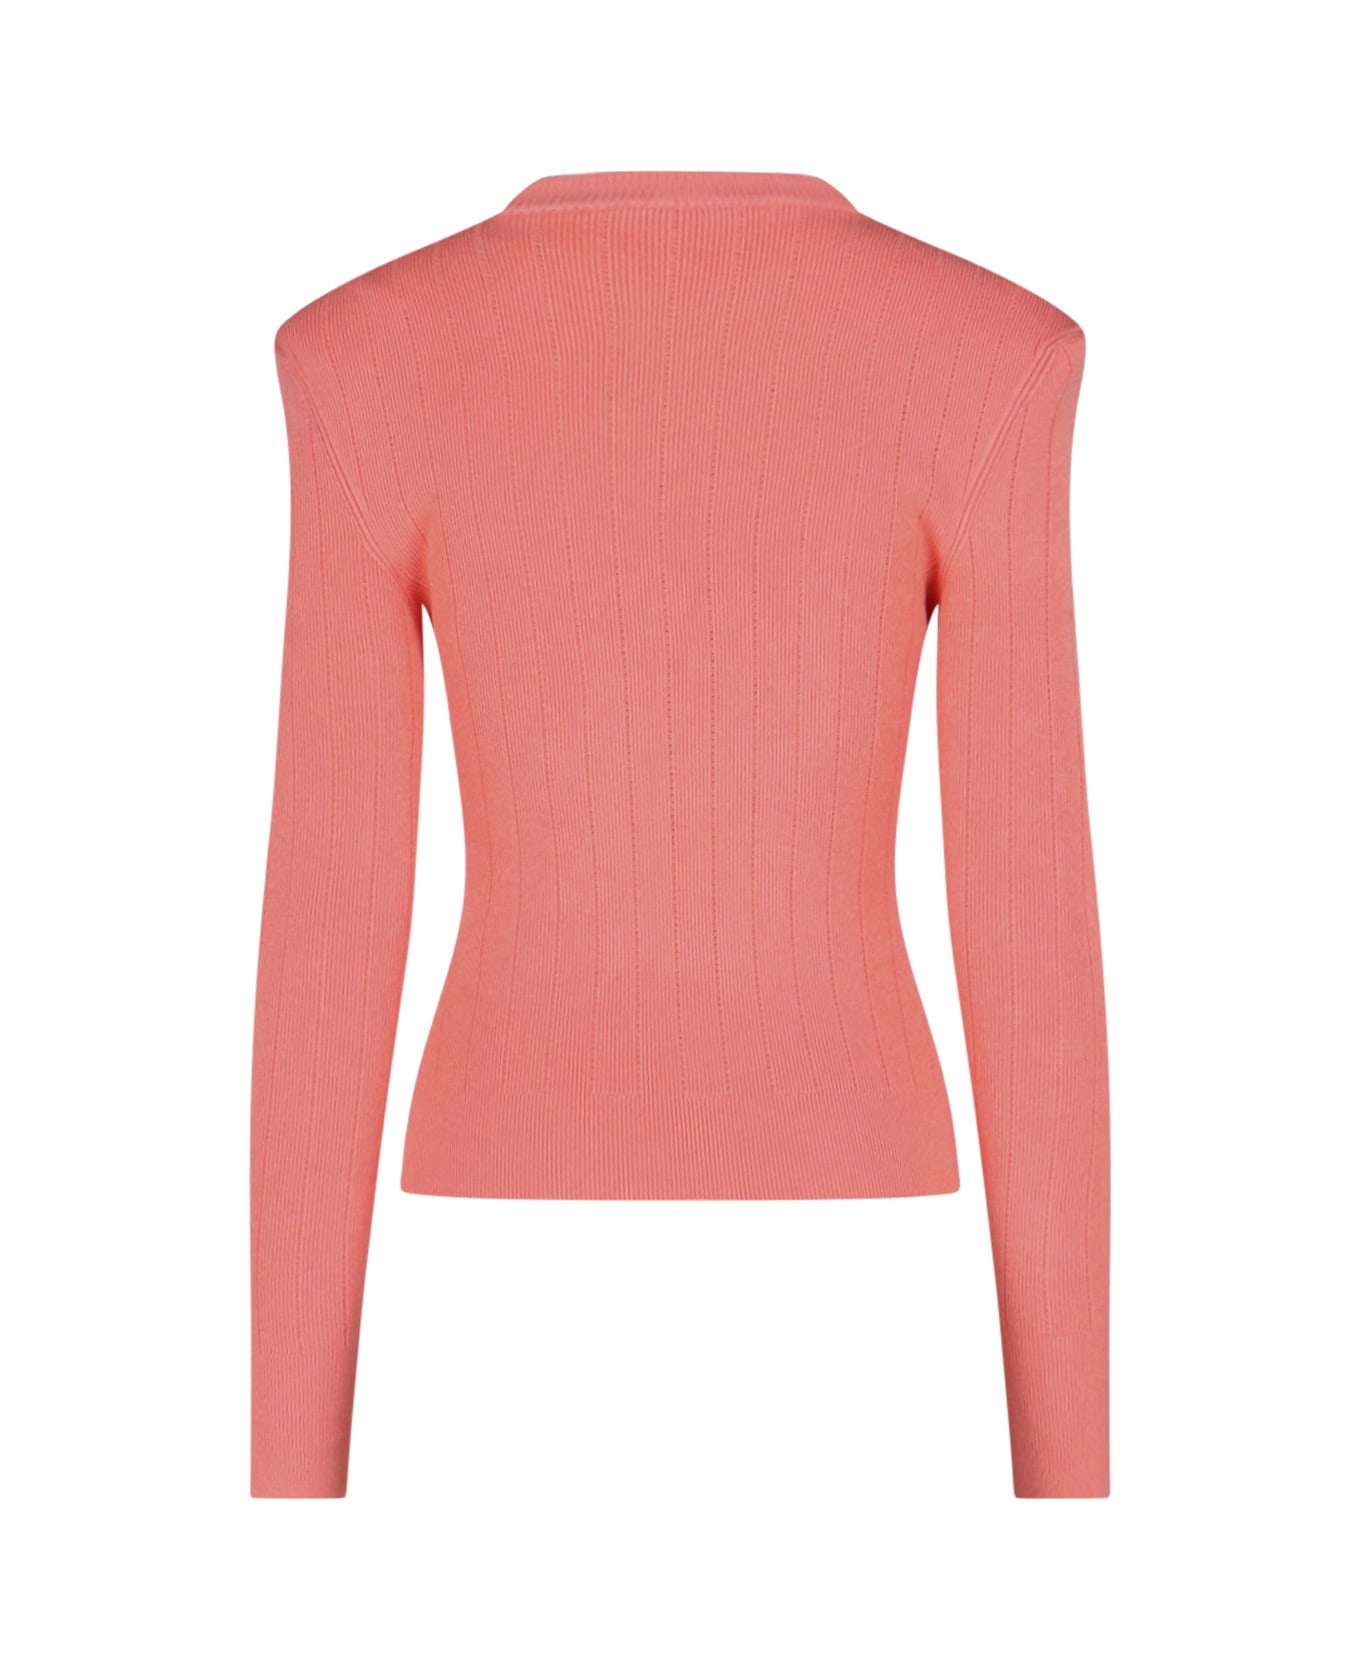 Balmain Gold Button Sweater - Pink ニットウェア